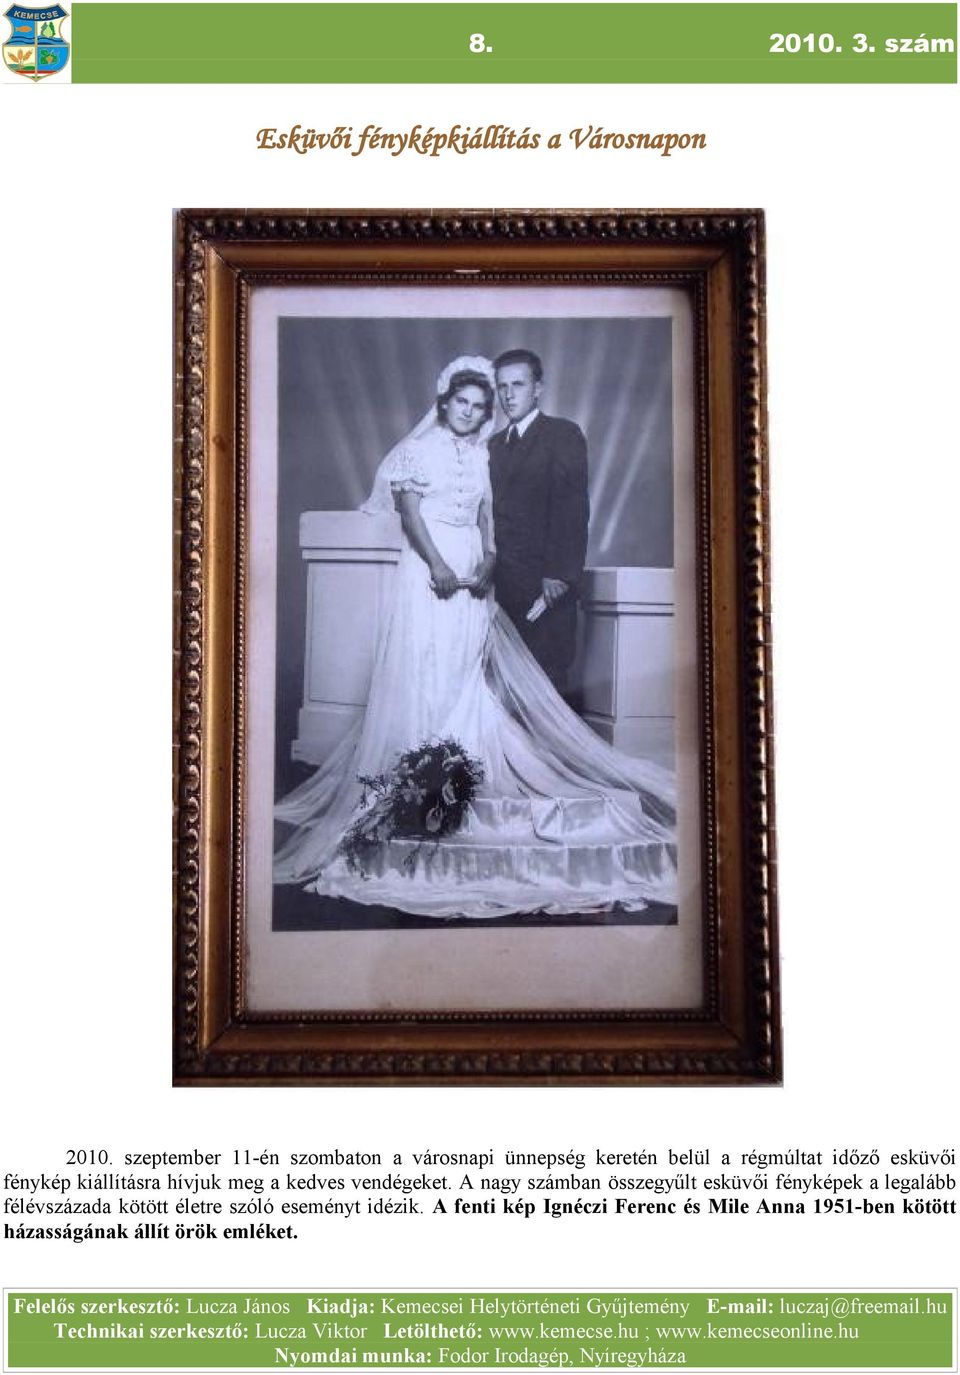 A ngy számbn összegyűlt esküvői fényképek leglább félévszázd kötött életre szóló eseményt idézik.